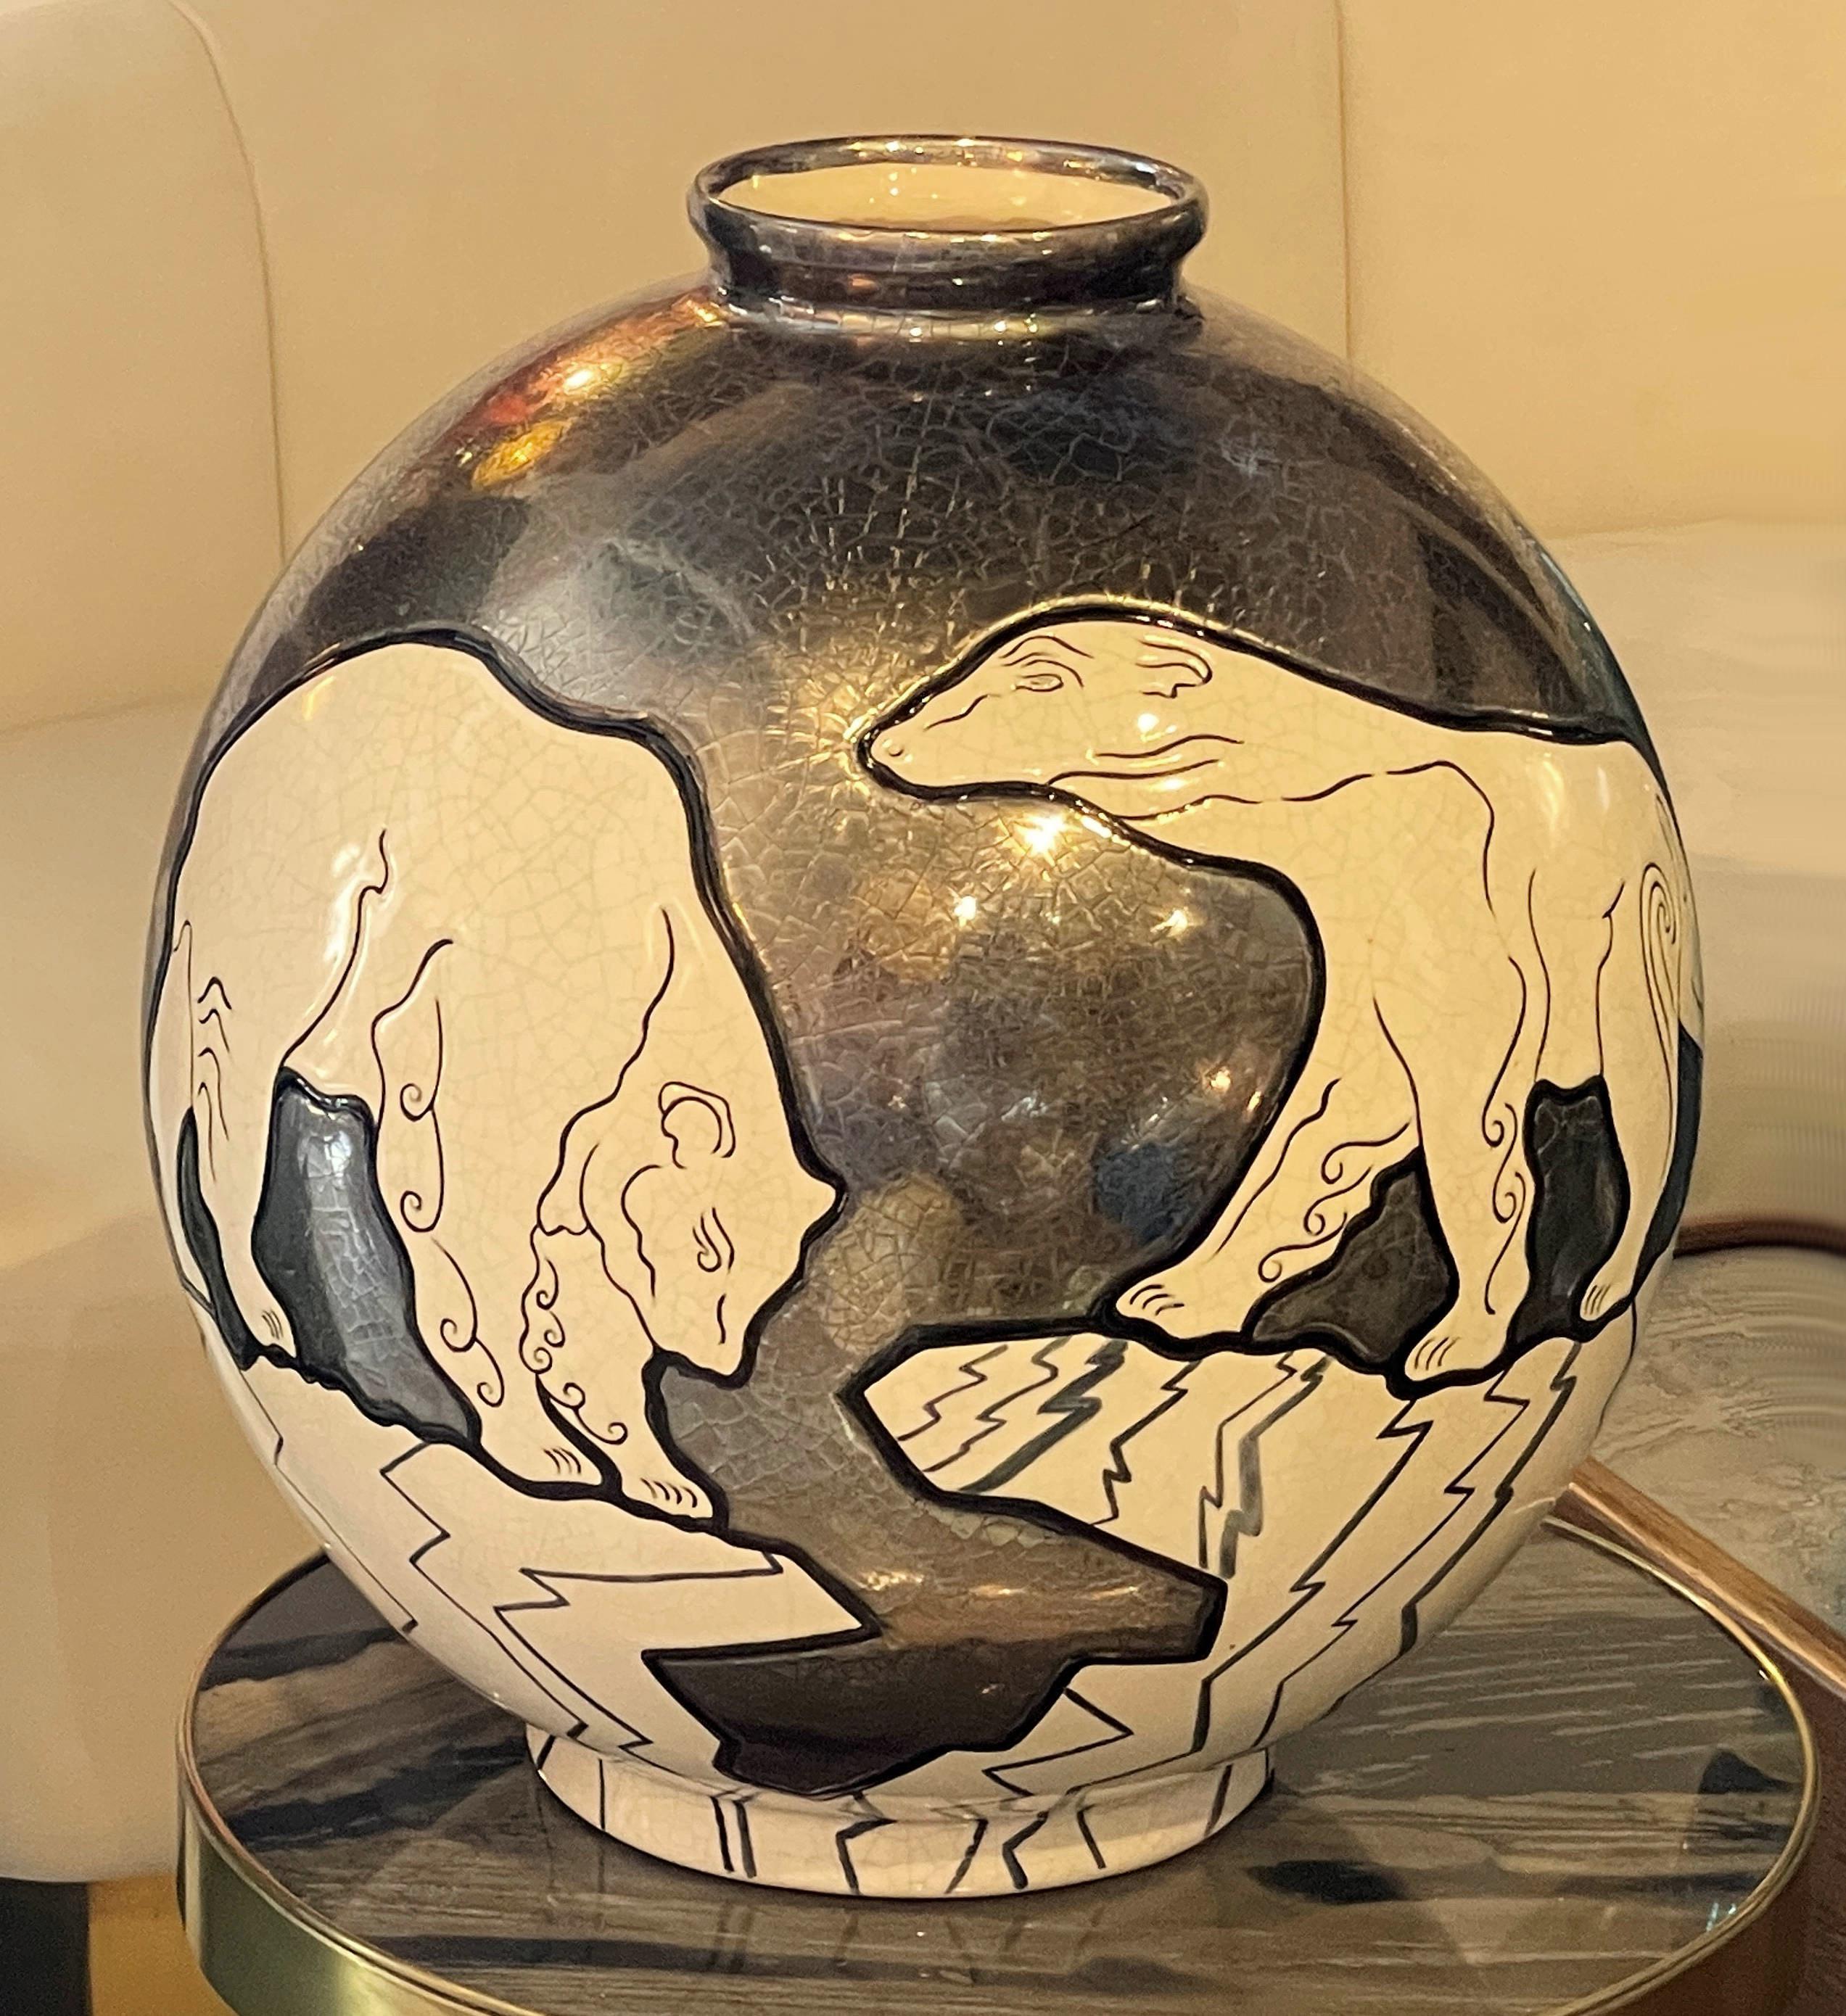 Vase, Polarbär, von Danillo Curetti. „Emaux de Longwy“ ist ein Stück in limitierter Auflage und mit der Nummer 21/50 versehen. Curetti war ein junger zeitgenössischer Künstler aus der Schweiz, der sechs Jahre lang mit den Faenceries in Longwy